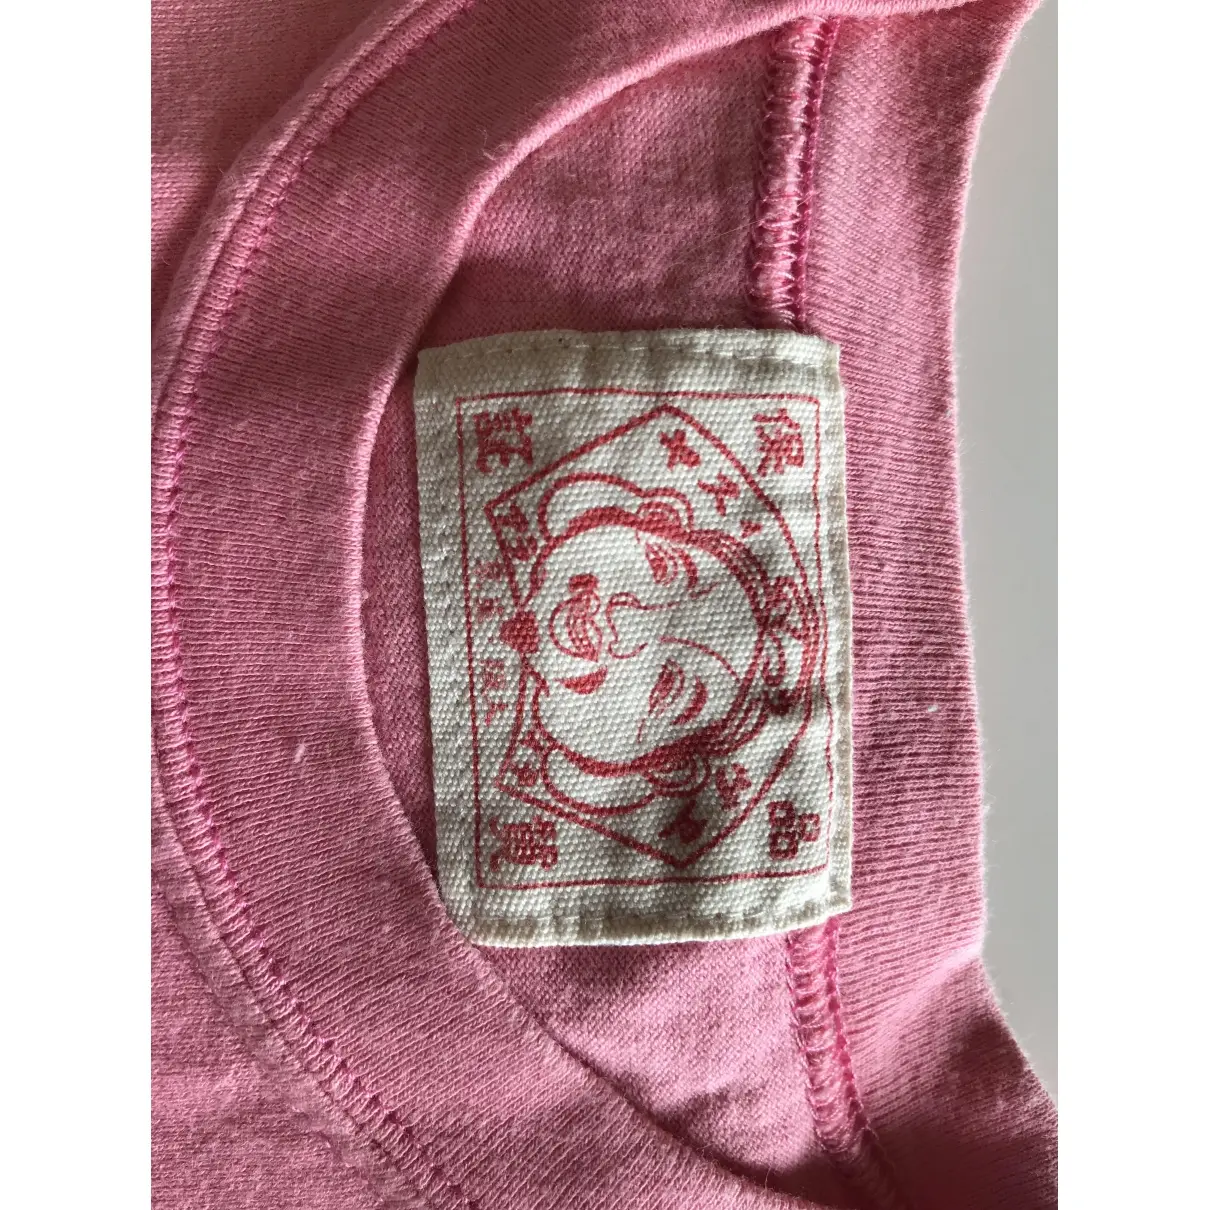 Buy Evisu Pink Cotton Top online